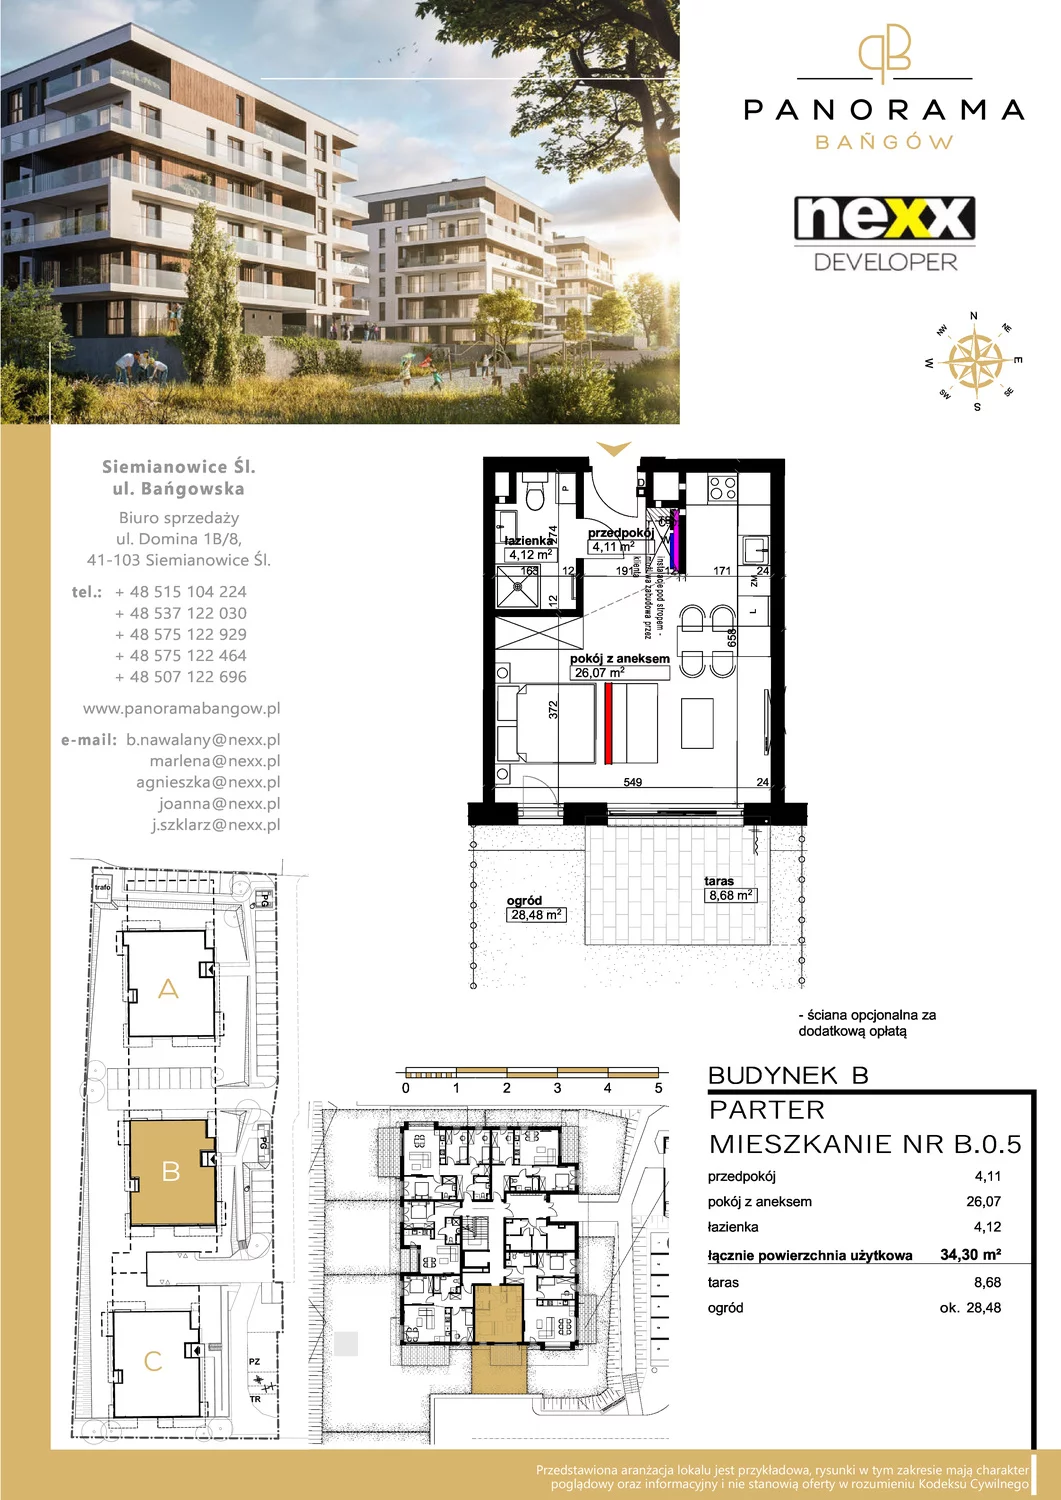 Mieszkanie 34,30 m², parter, oferta nr B 0.5, Panorama Bańgów, Siemianowice Śląskie, Bańgów, ul. Bańgowska